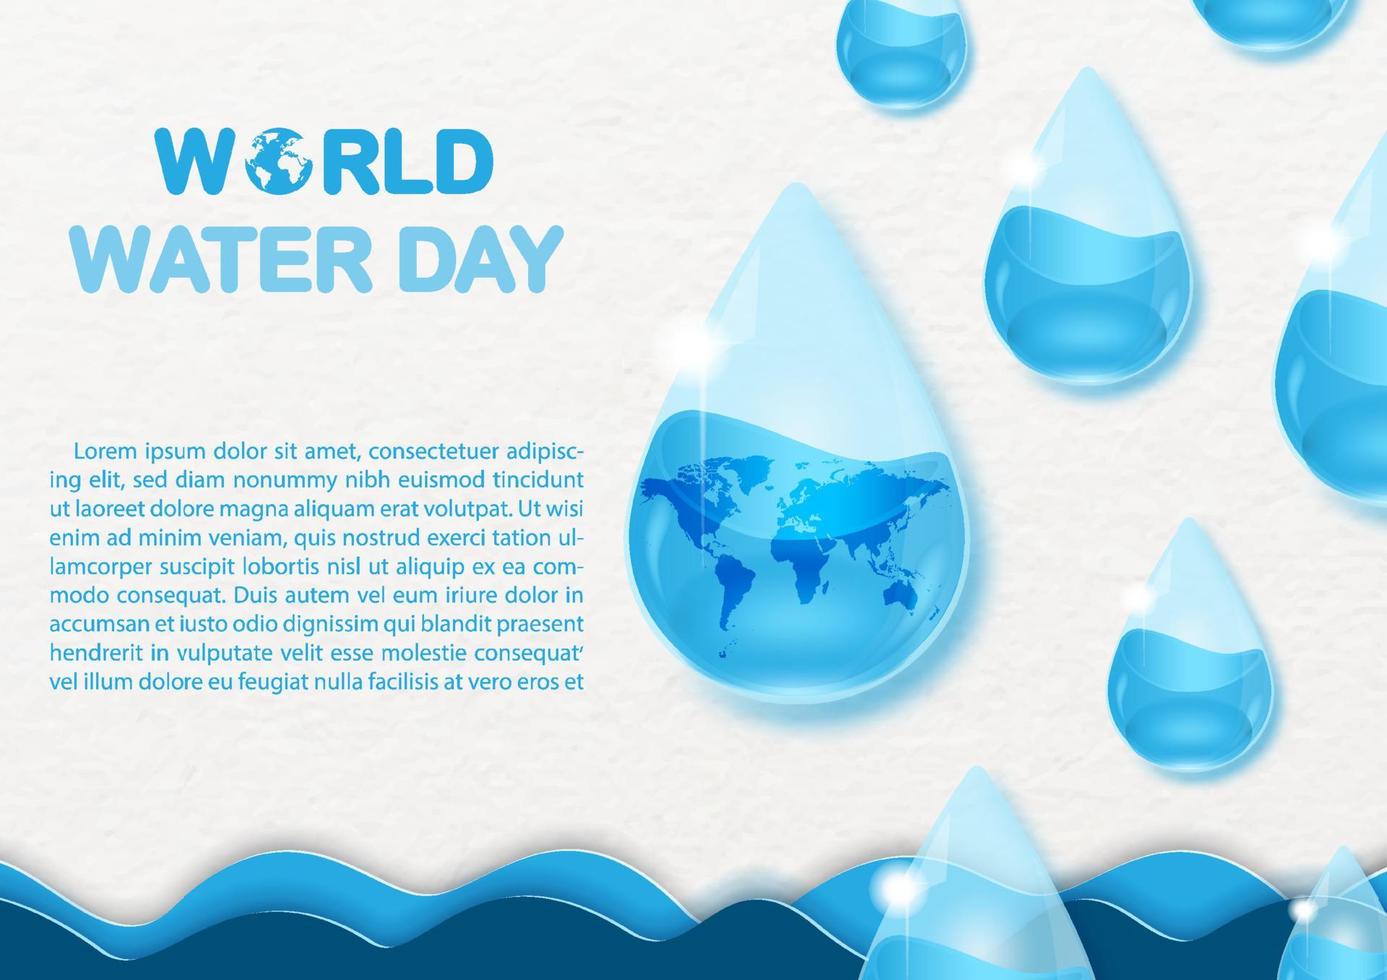 wereld water dag formulering met voorbeeld teksten en wereld kaart in water druppels glas stijl Aan zee Golf en wit papier patroon achtergrond. vector